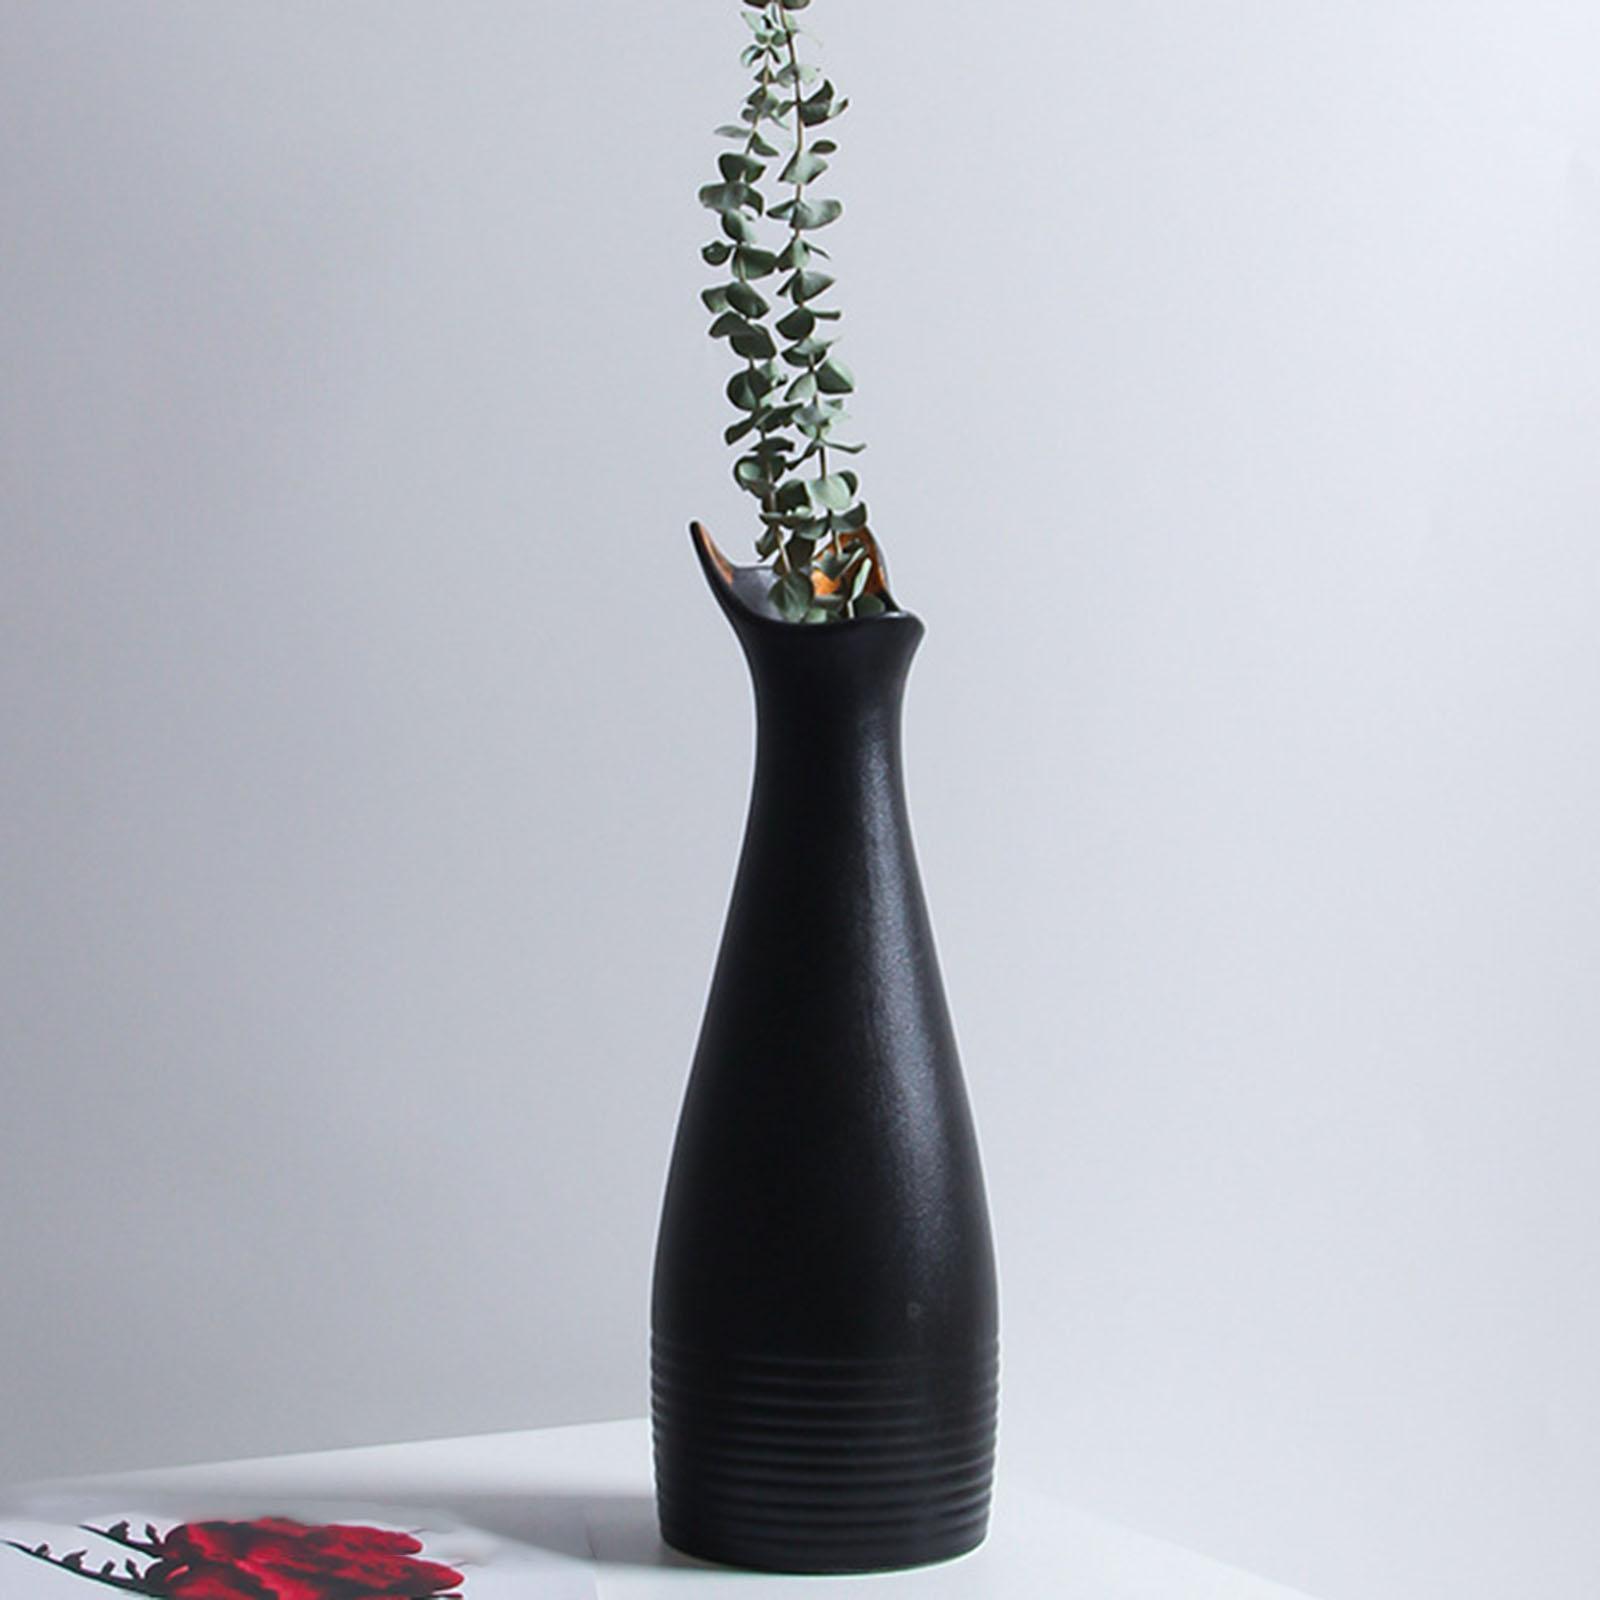 Ceramic Flower Vase Minimalist Home Office Flower Pot Floral Vases